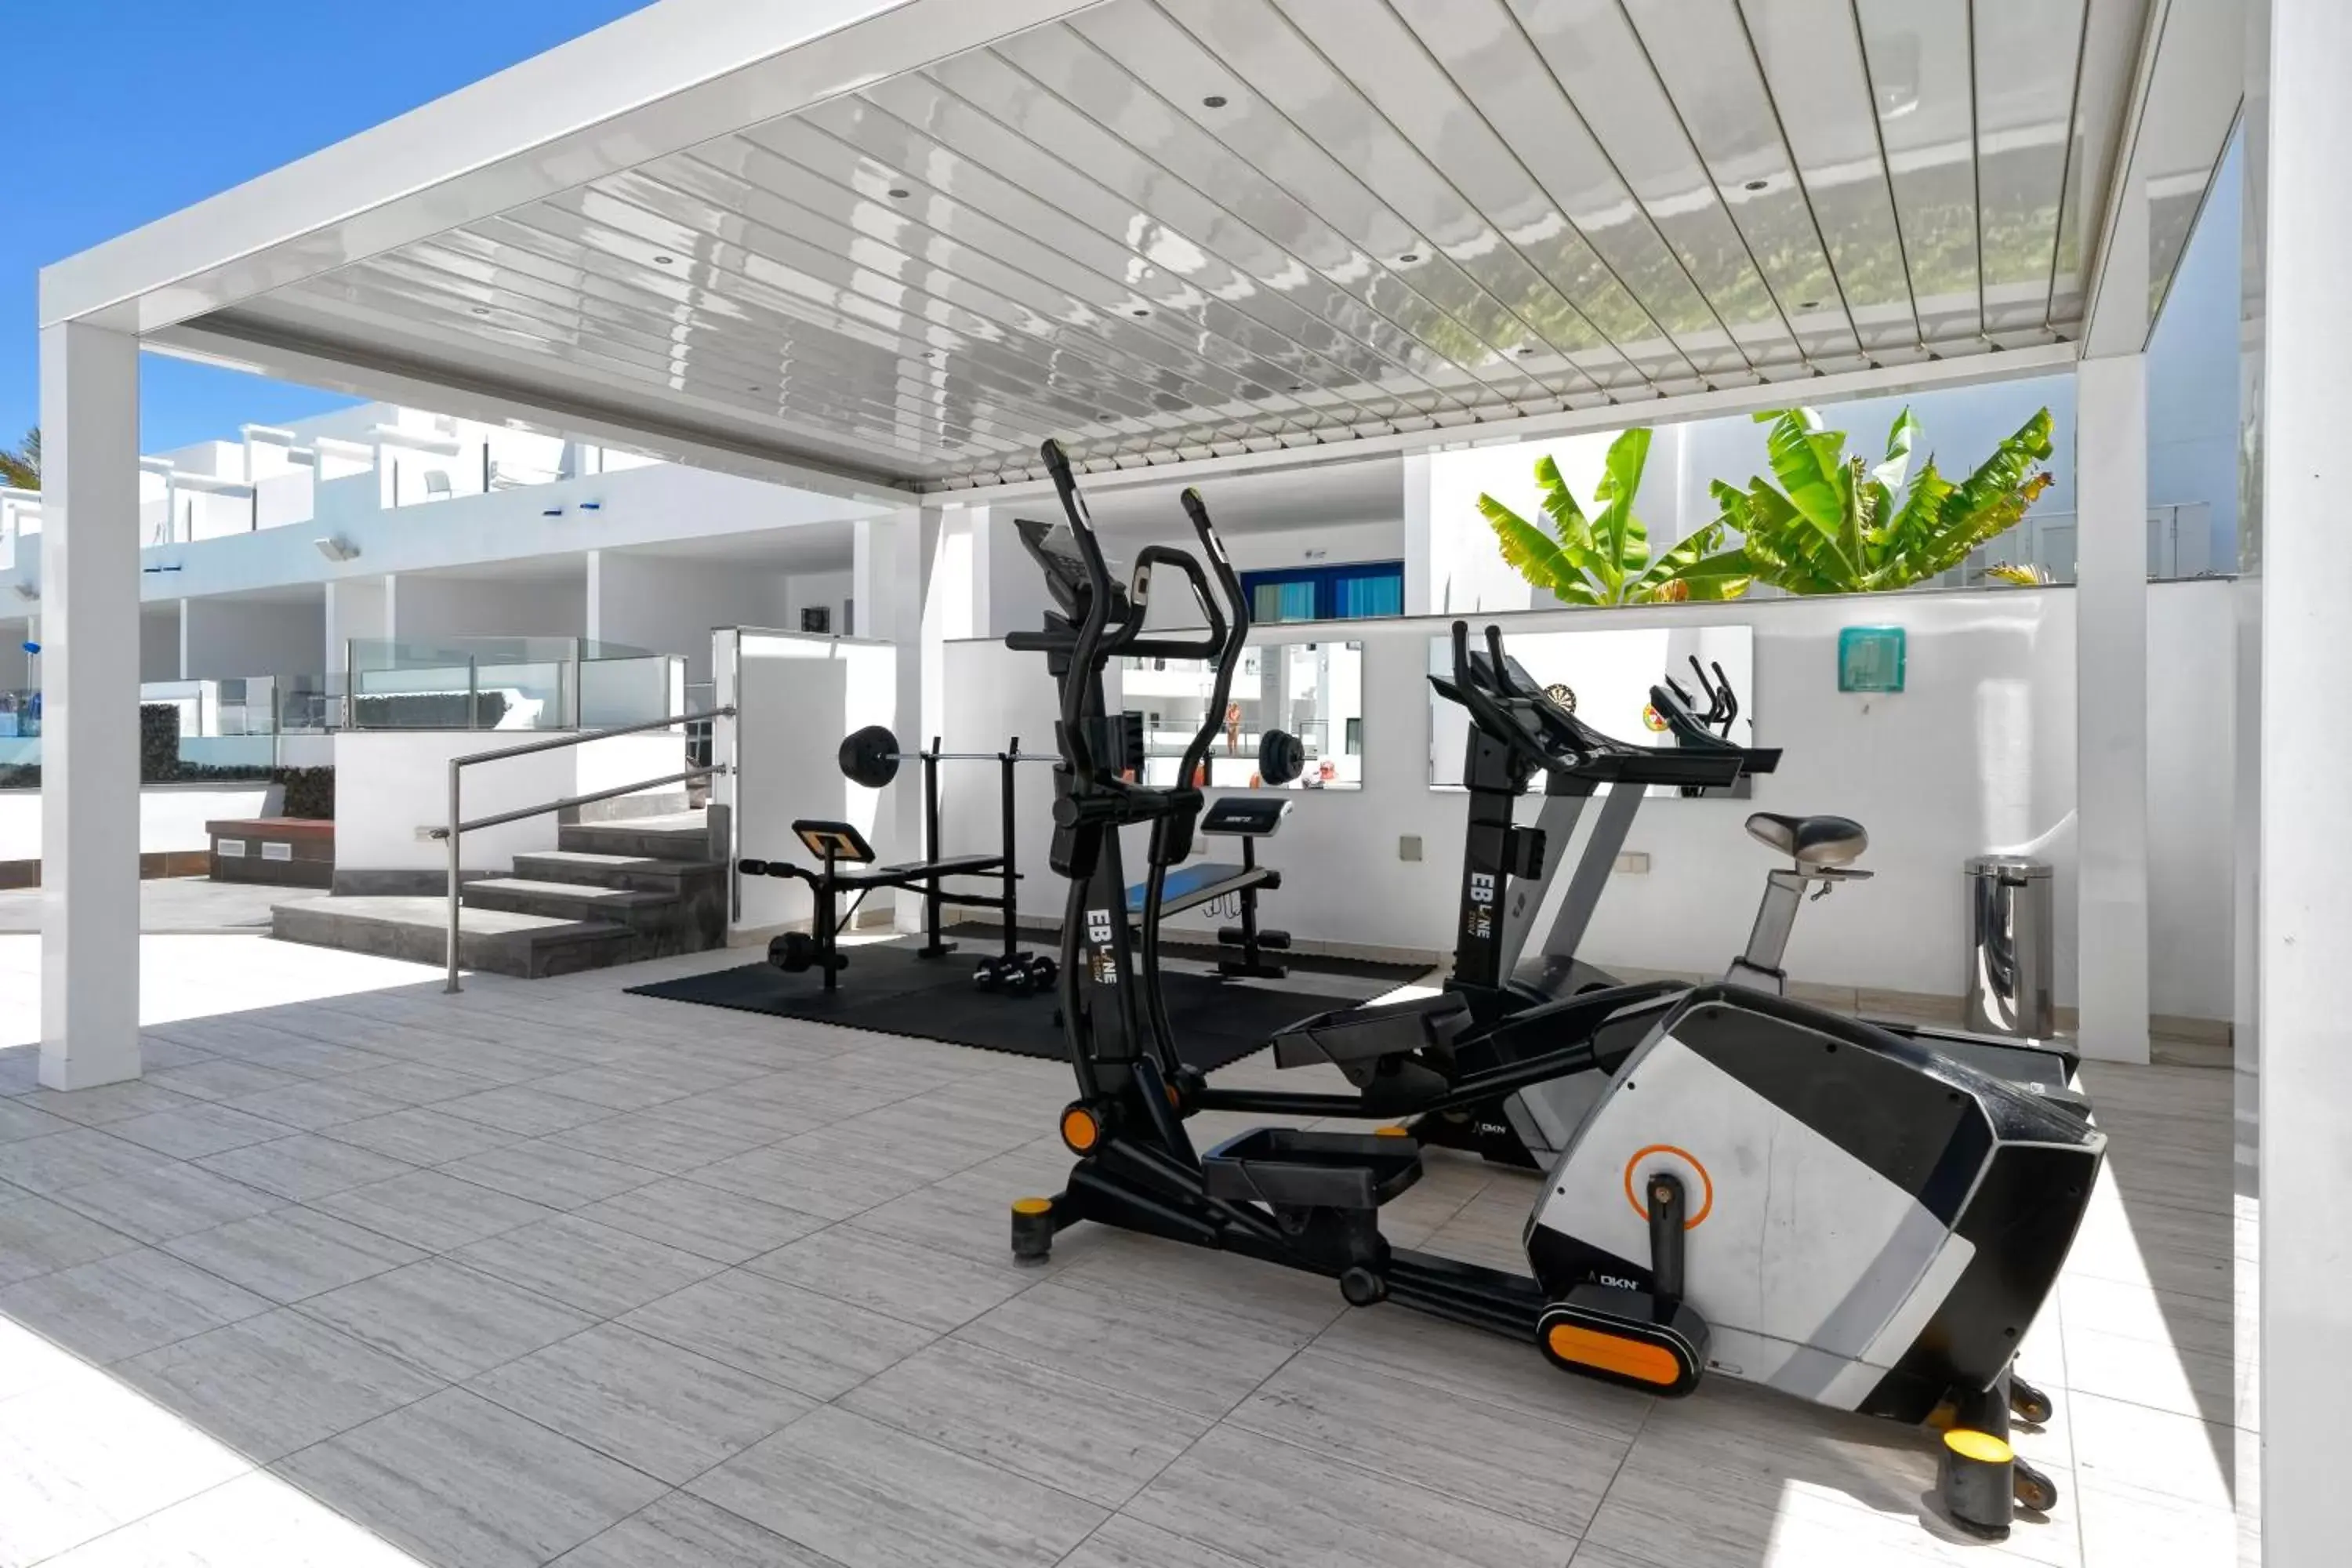 Fitness centre/facilities, Fitness Center/Facilities in Aqua Suites